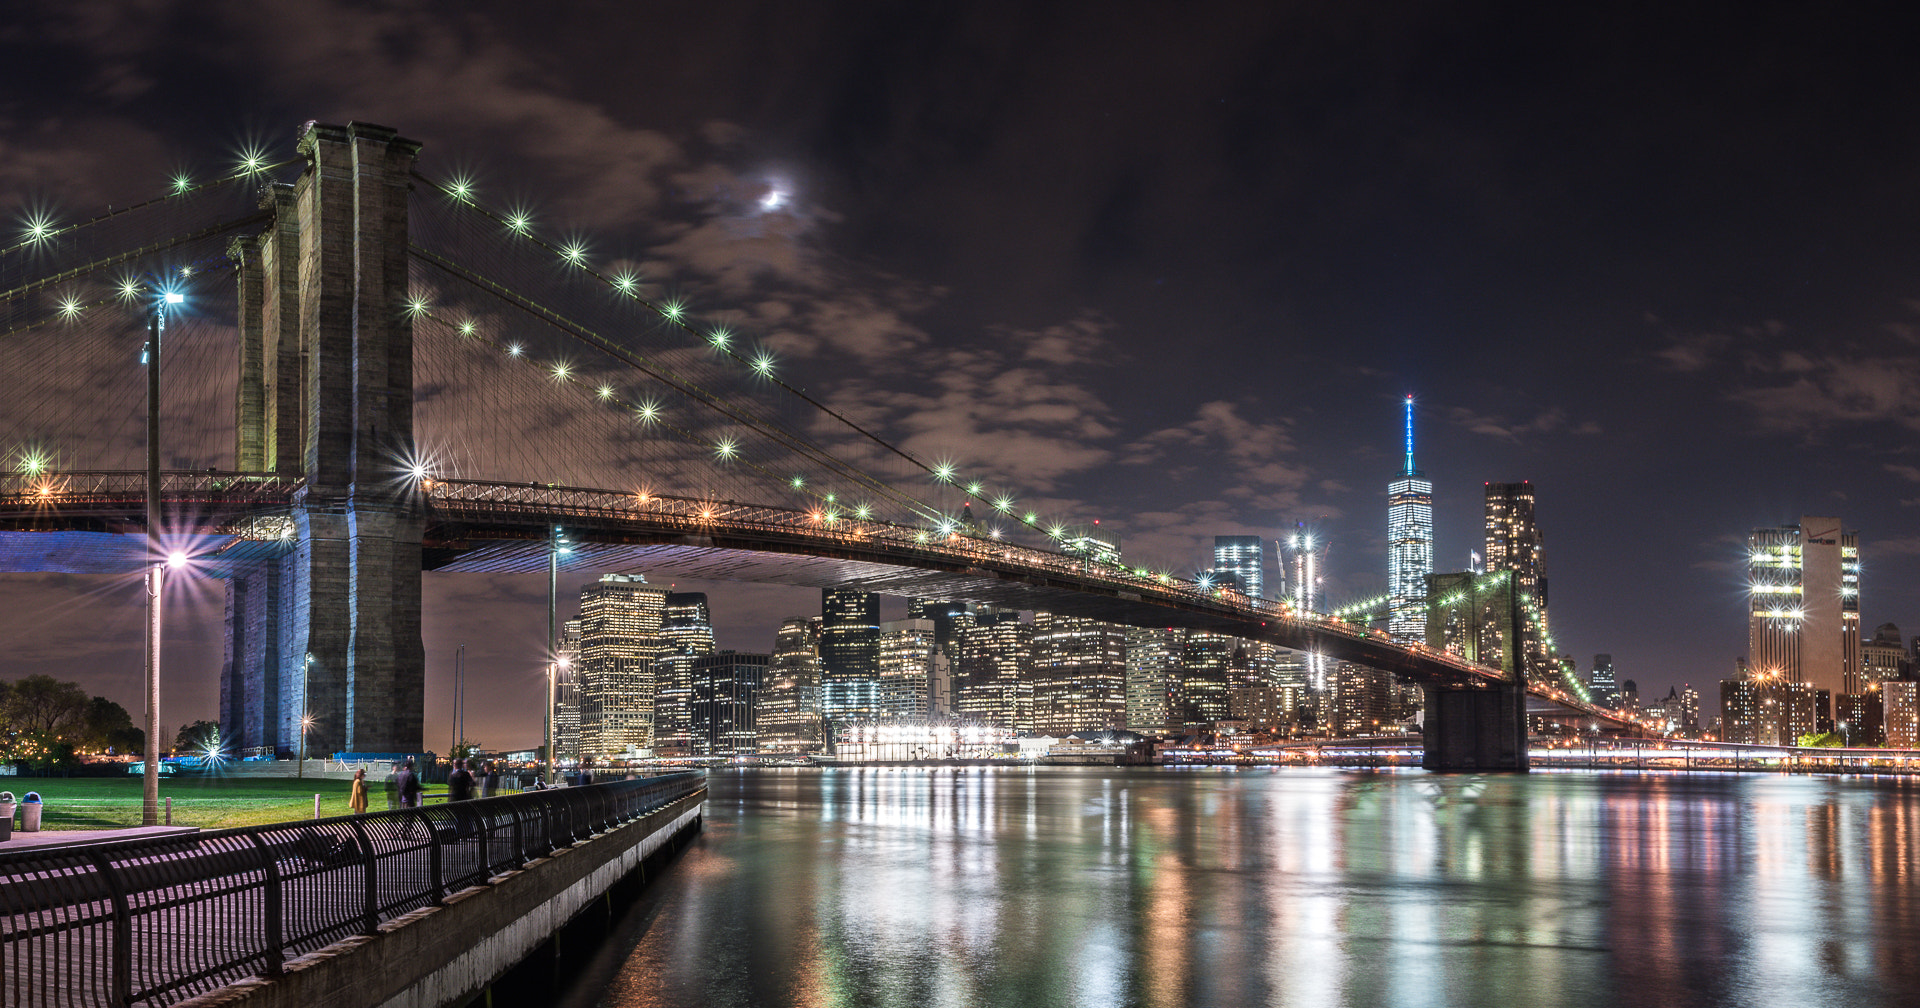 Nikon D5500 + Sigma 17-70mm F2.8-4 DC Macro OS HSM | C sample photo. Brooklyn bridge panorama in the night photography